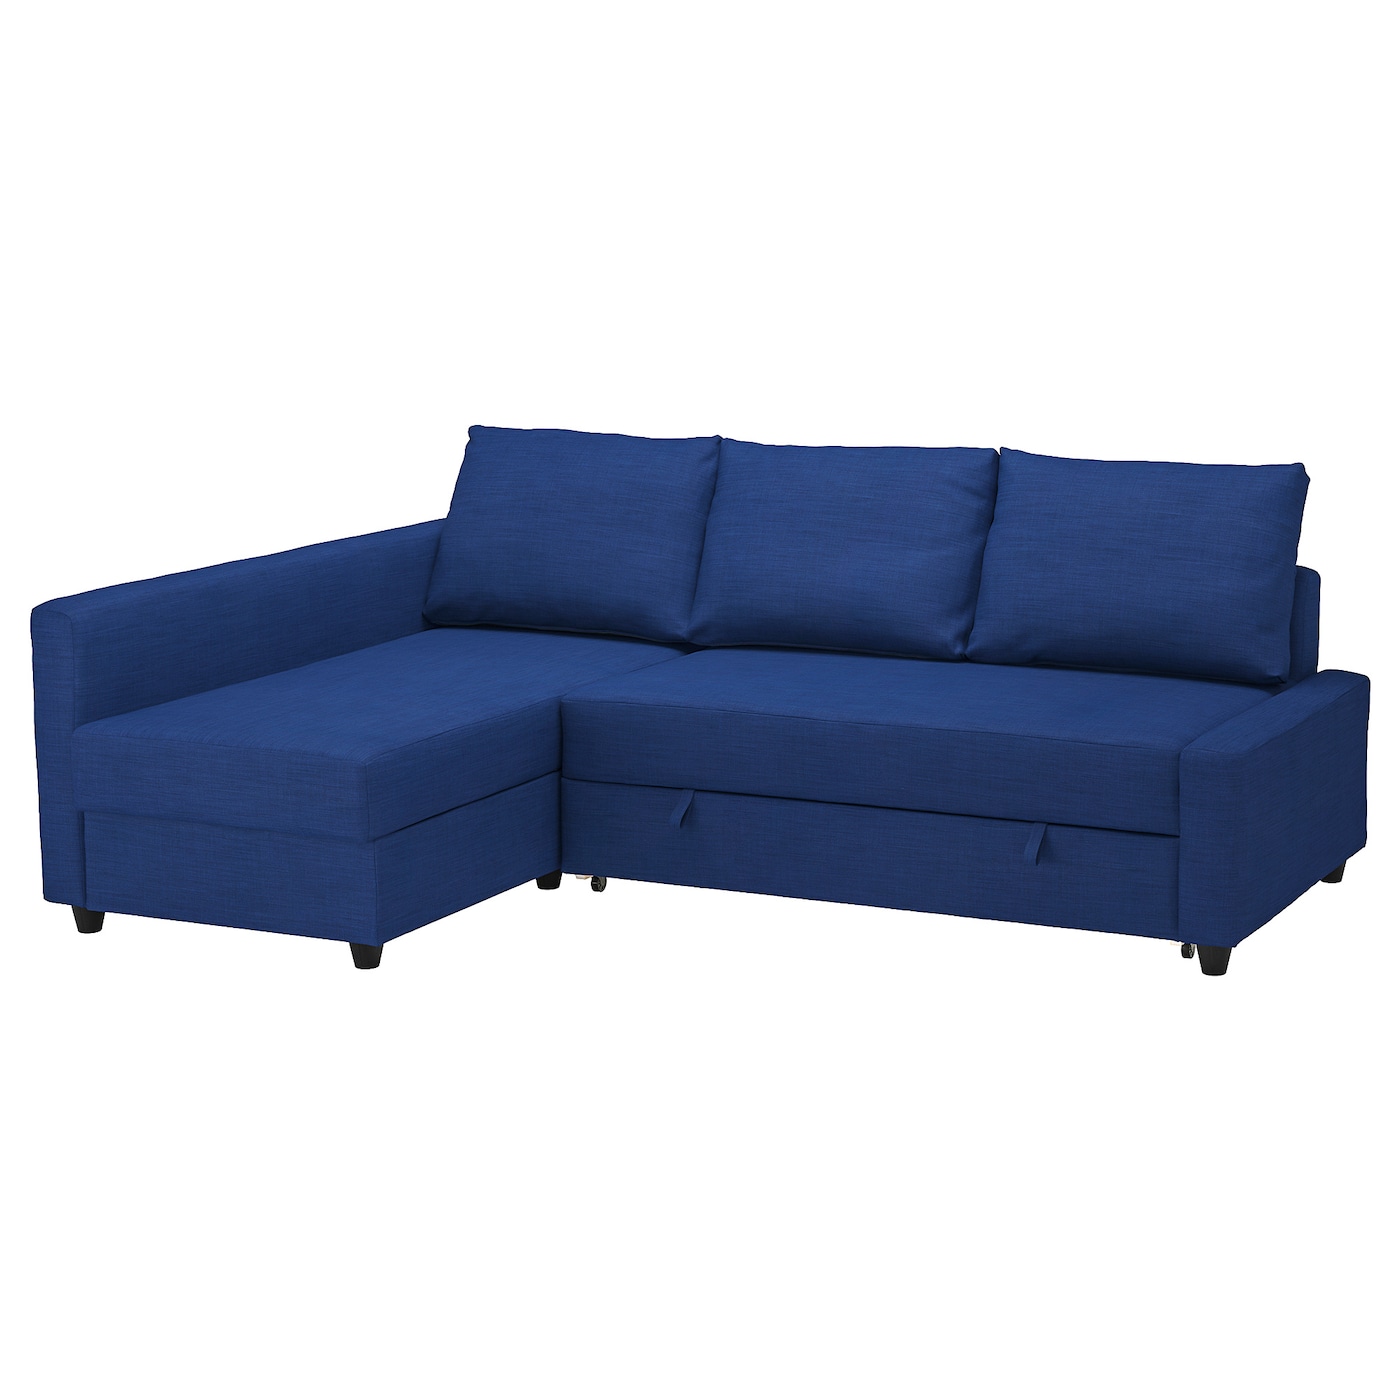 ФРИХЕТЕН Угловой диван-кровать + место для хранения, Скифтебо синий FRIHETEN IKEA диван кровать лора тд 328